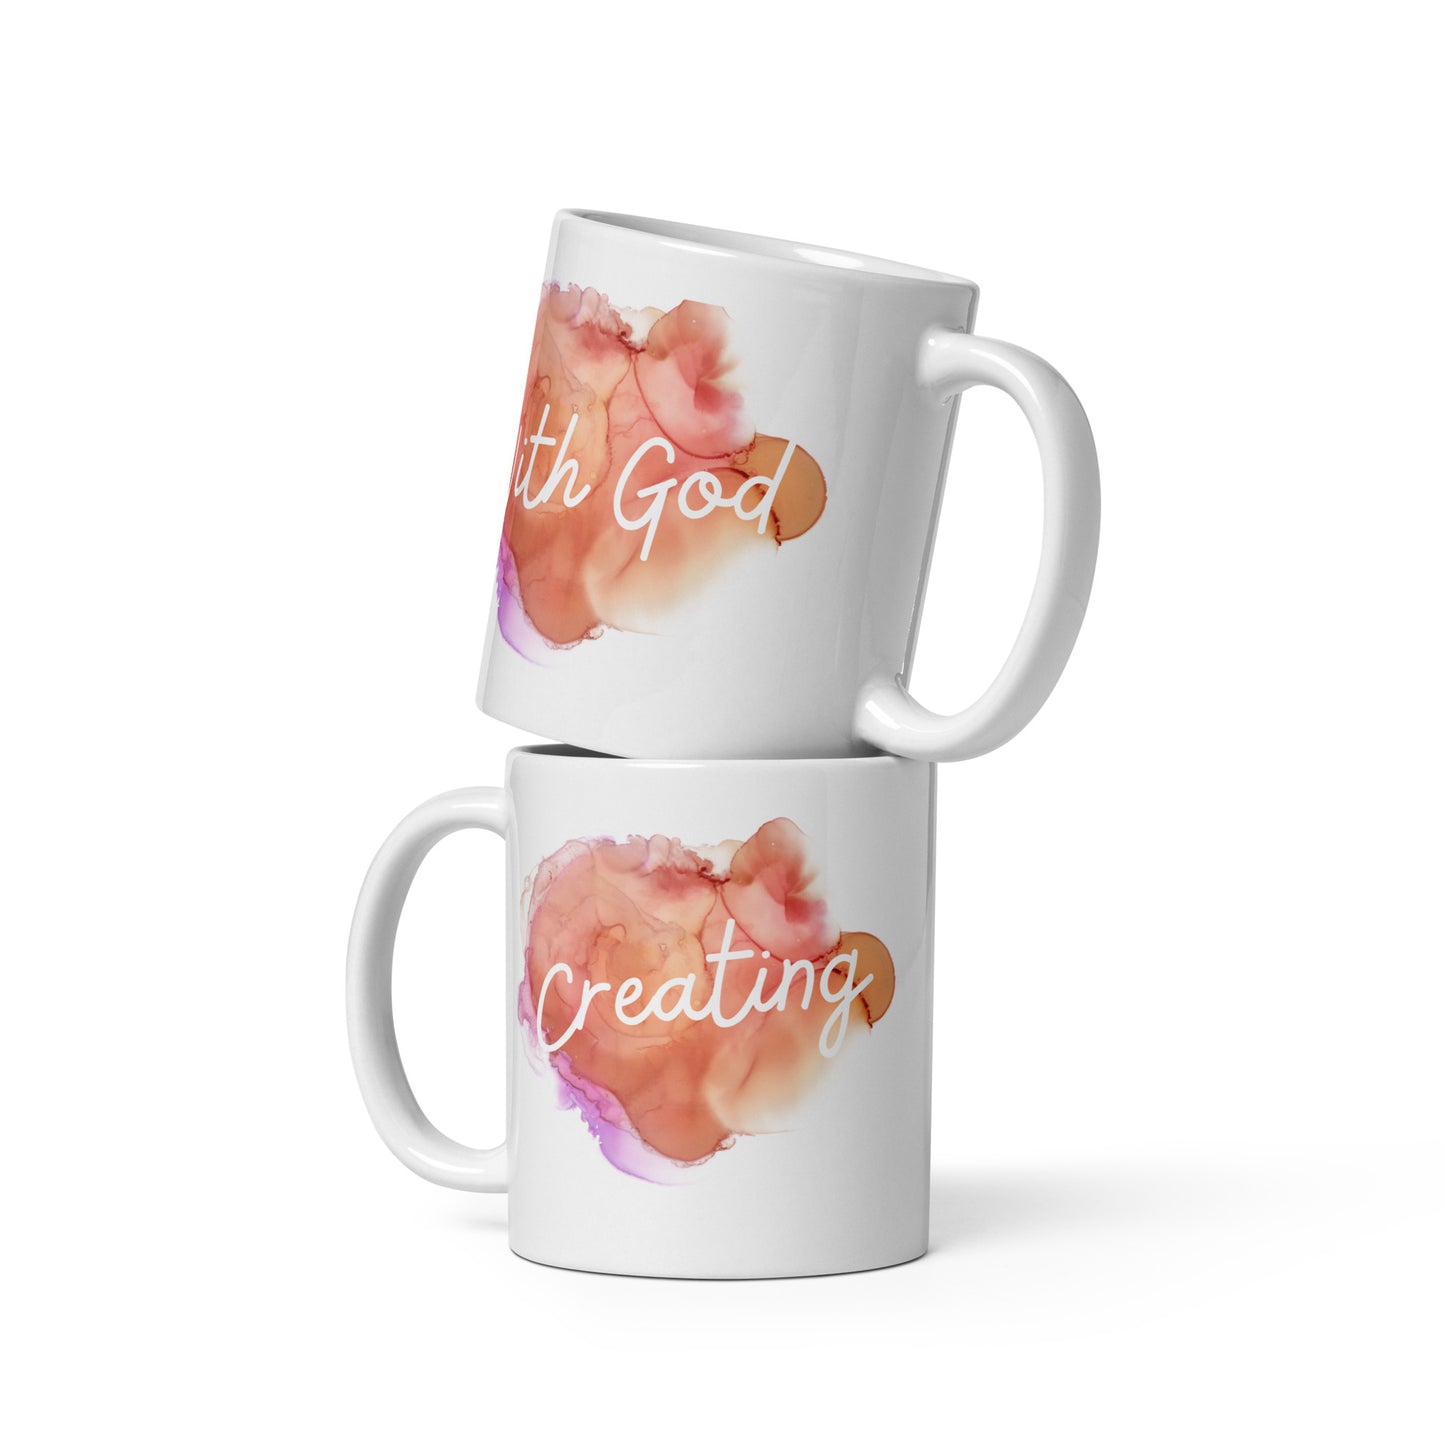 Creating with God Mug